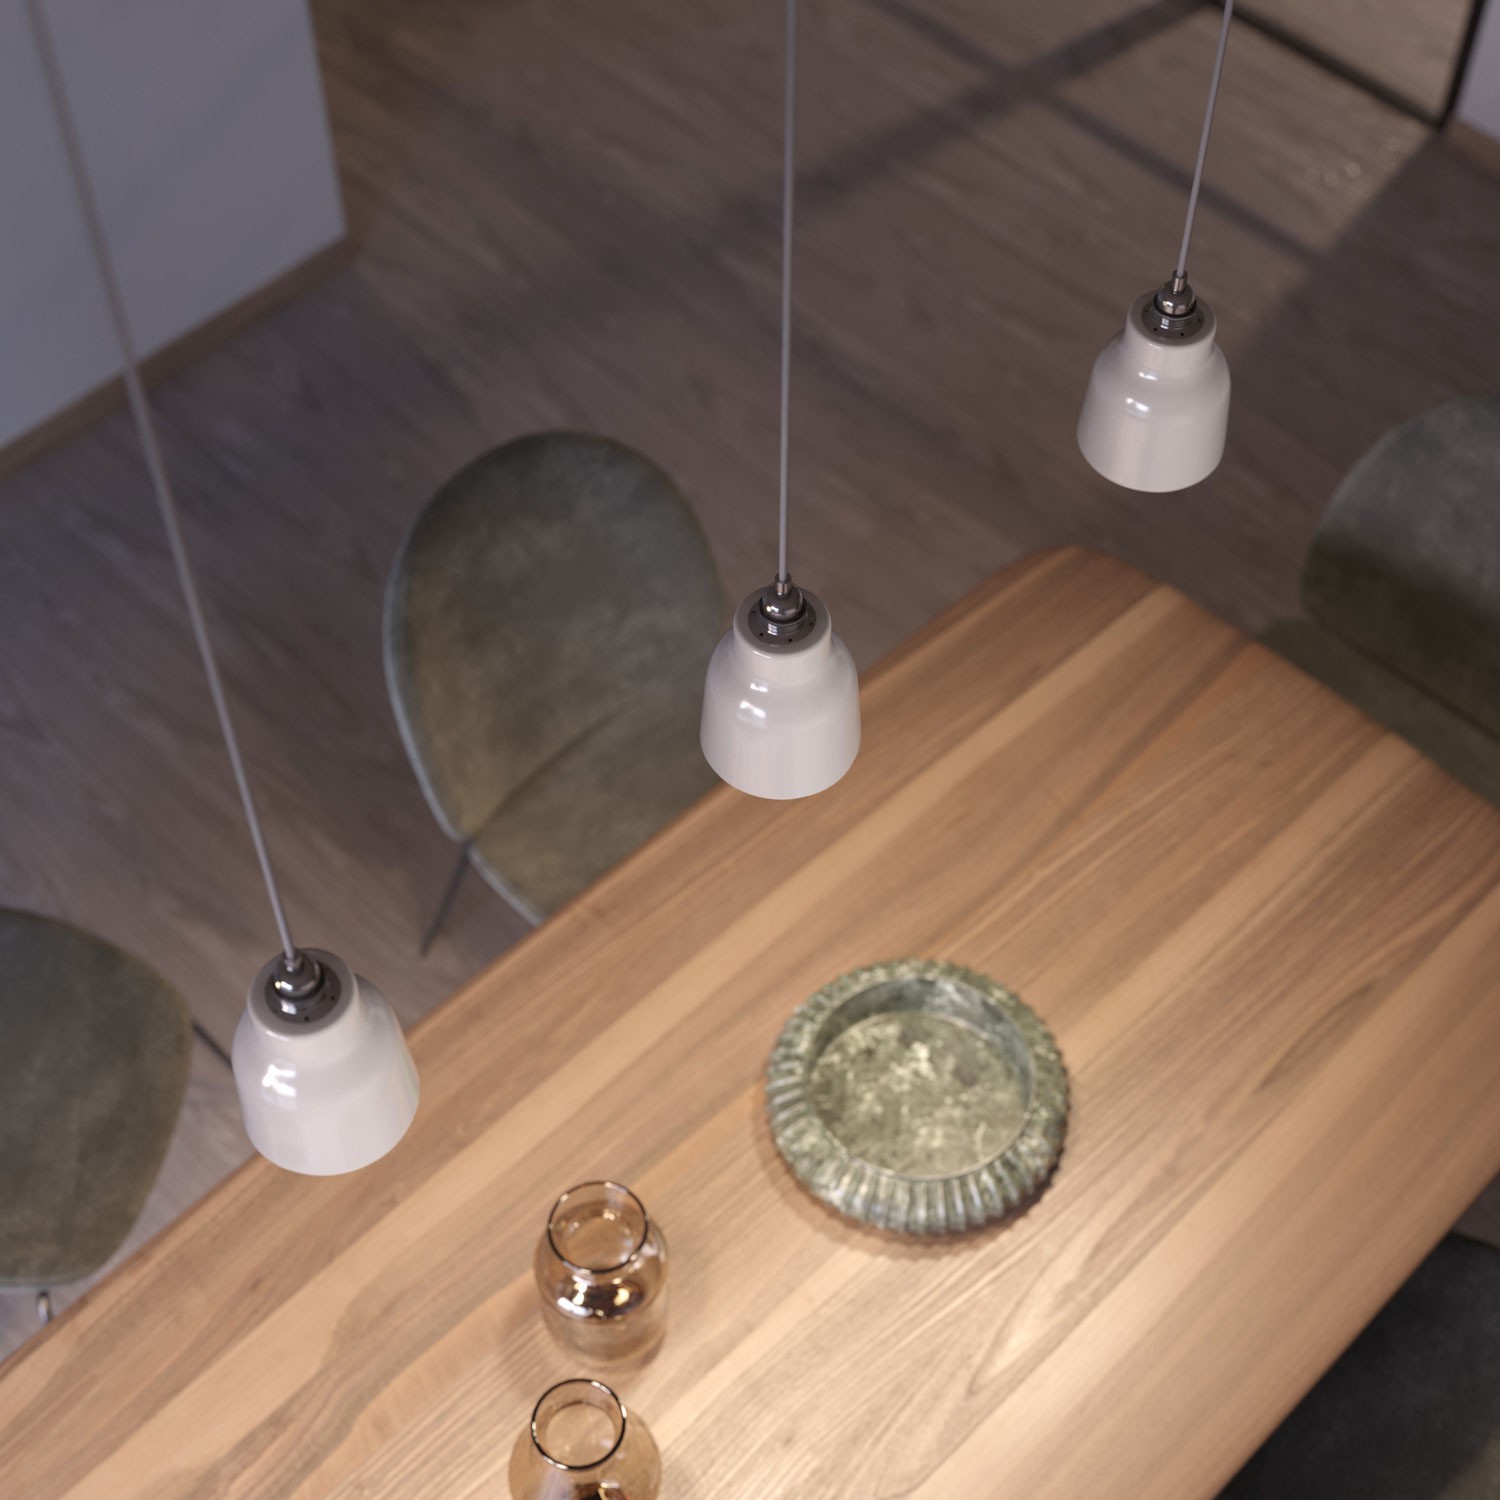 Kerámia lámpabúra Váza, Materia Kollekció - Made in Italy